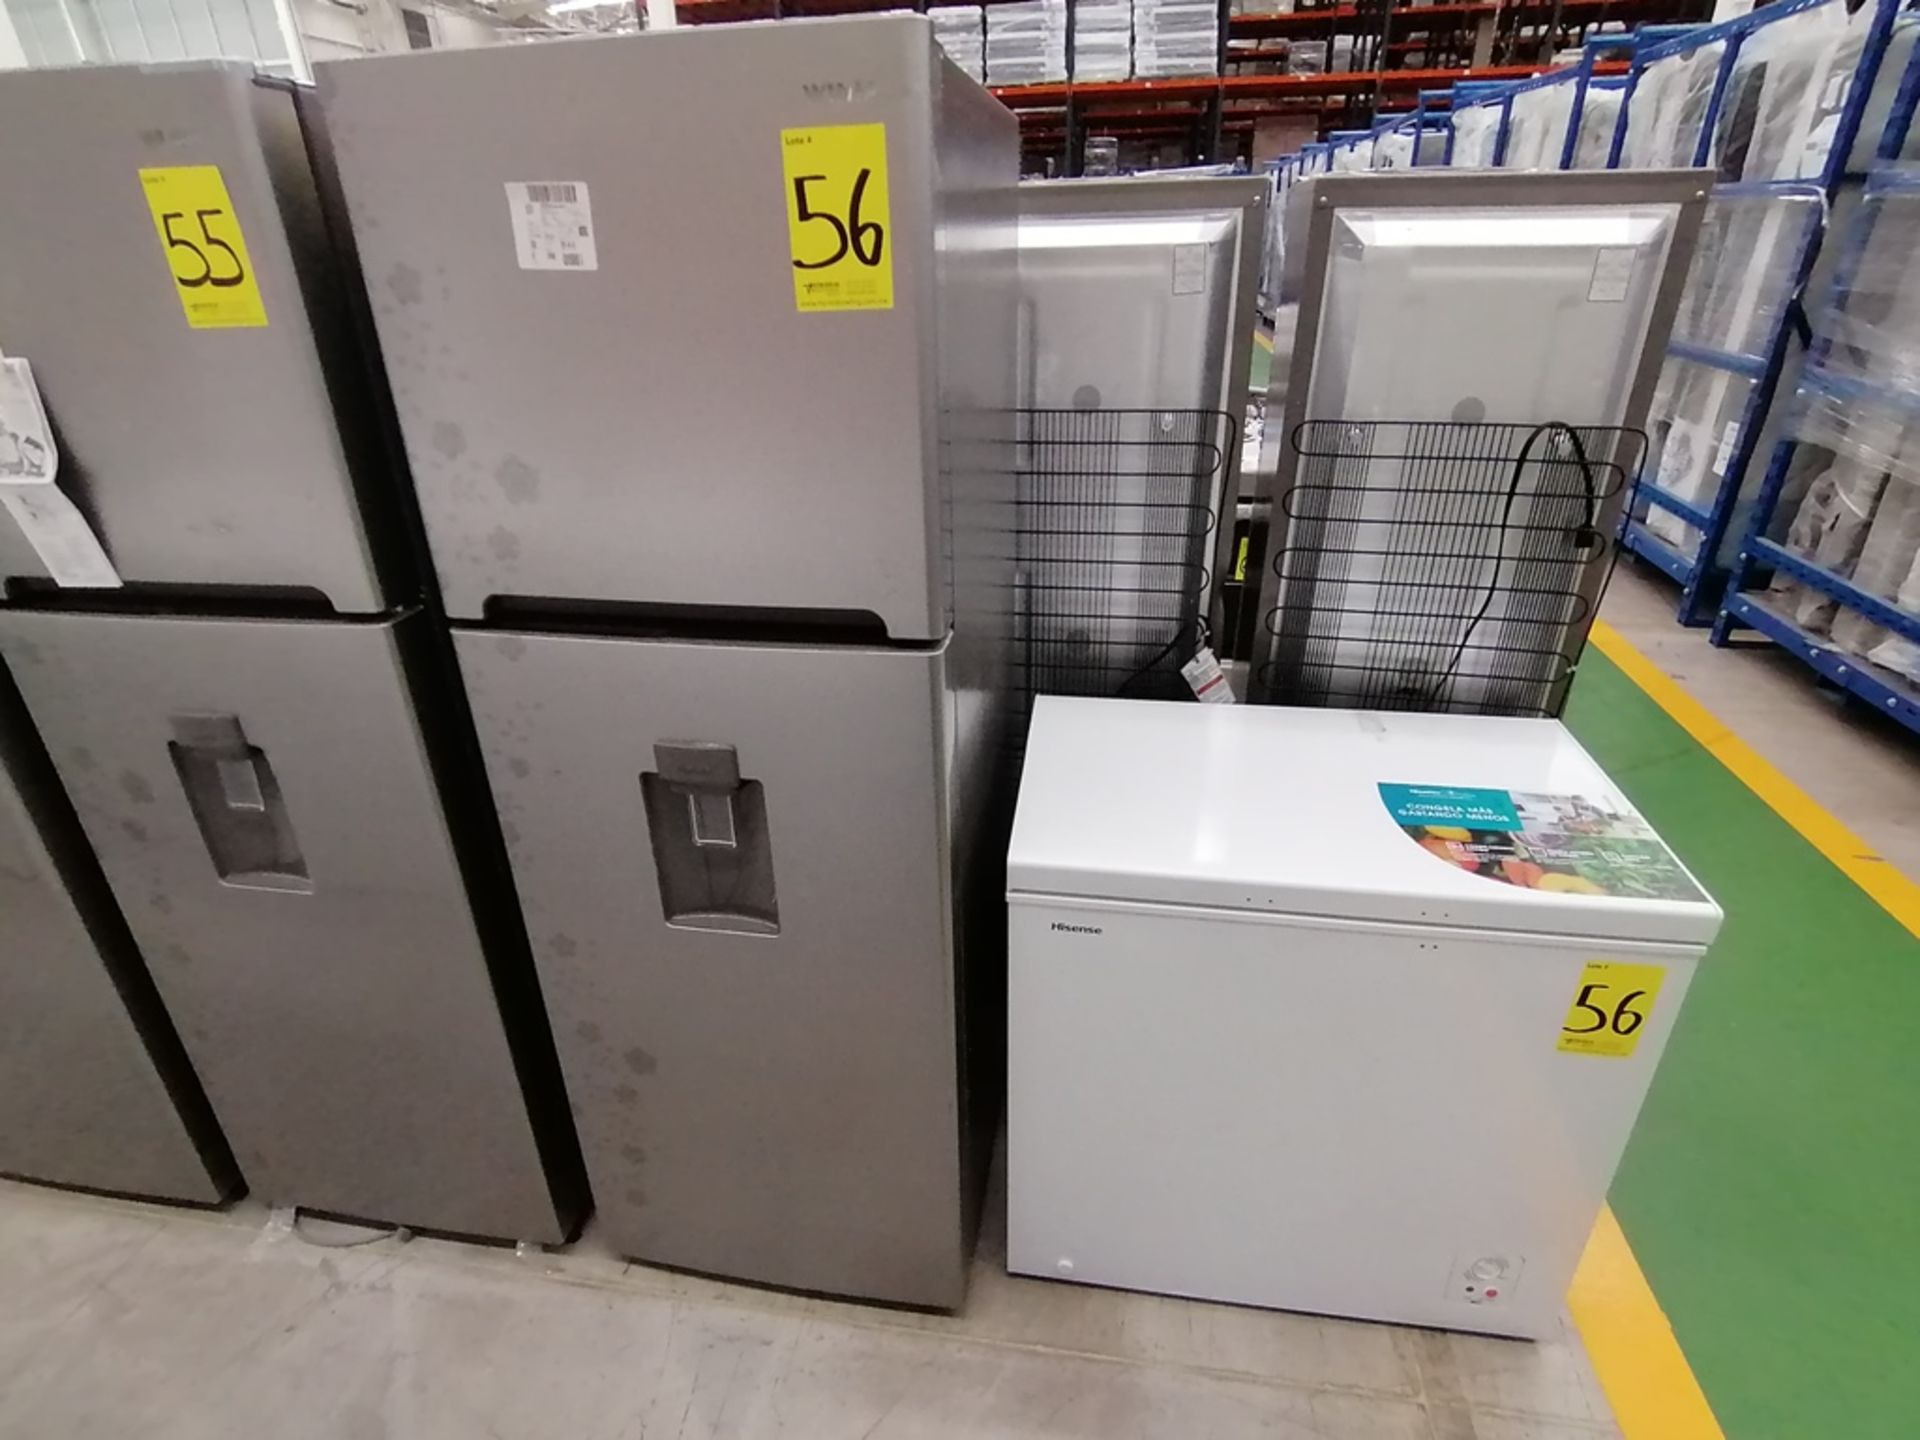 Lote de 2 refrigeradores incluye: 1 Refrigerador con dispensador de agua, Marca Winia, Modelo DFR40 - Image 11 of 17